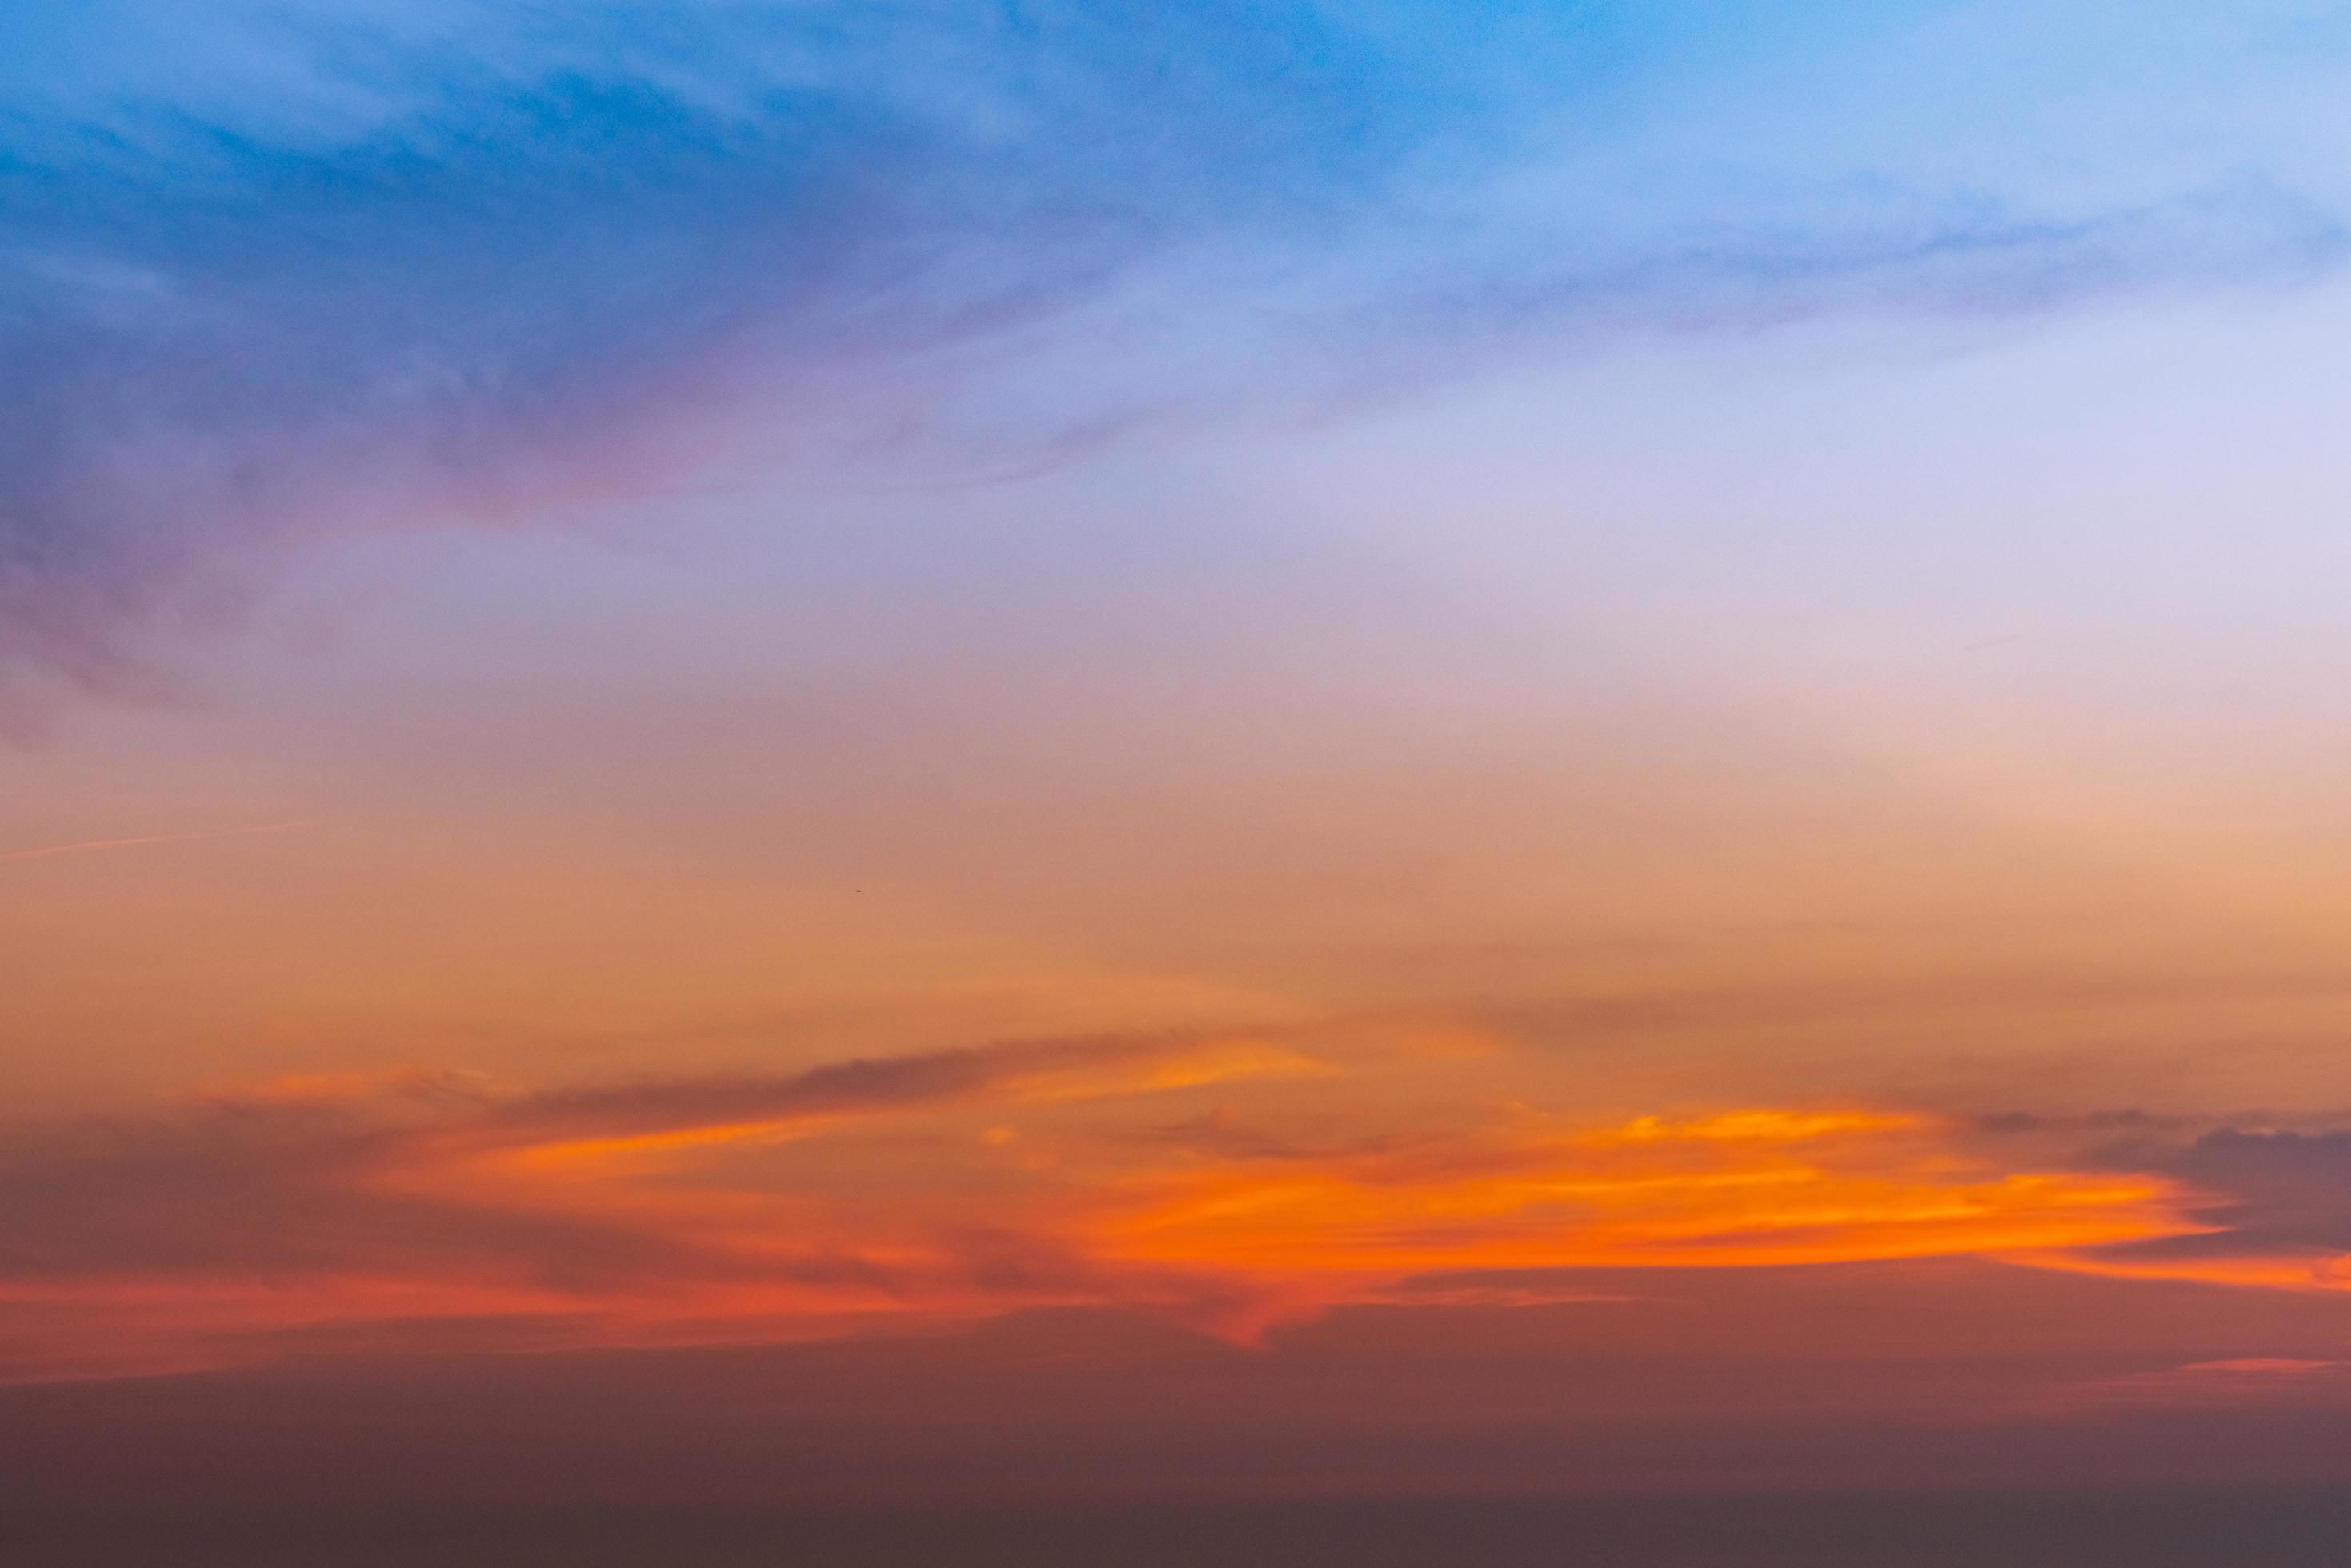 Màu xanh đặc trưng của bầu trời hoà quyện cùng sắc cam rực rỡ tạo nên một dải màu đẹp mê ly. Với những đám mây trôi qua như sóng biển, một tuyệt tác nghệ thuật của thiên nhiên được khai thác. Chiêm ngưỡng hình ảnh để trải nghiệm cảm giác đó nhé.